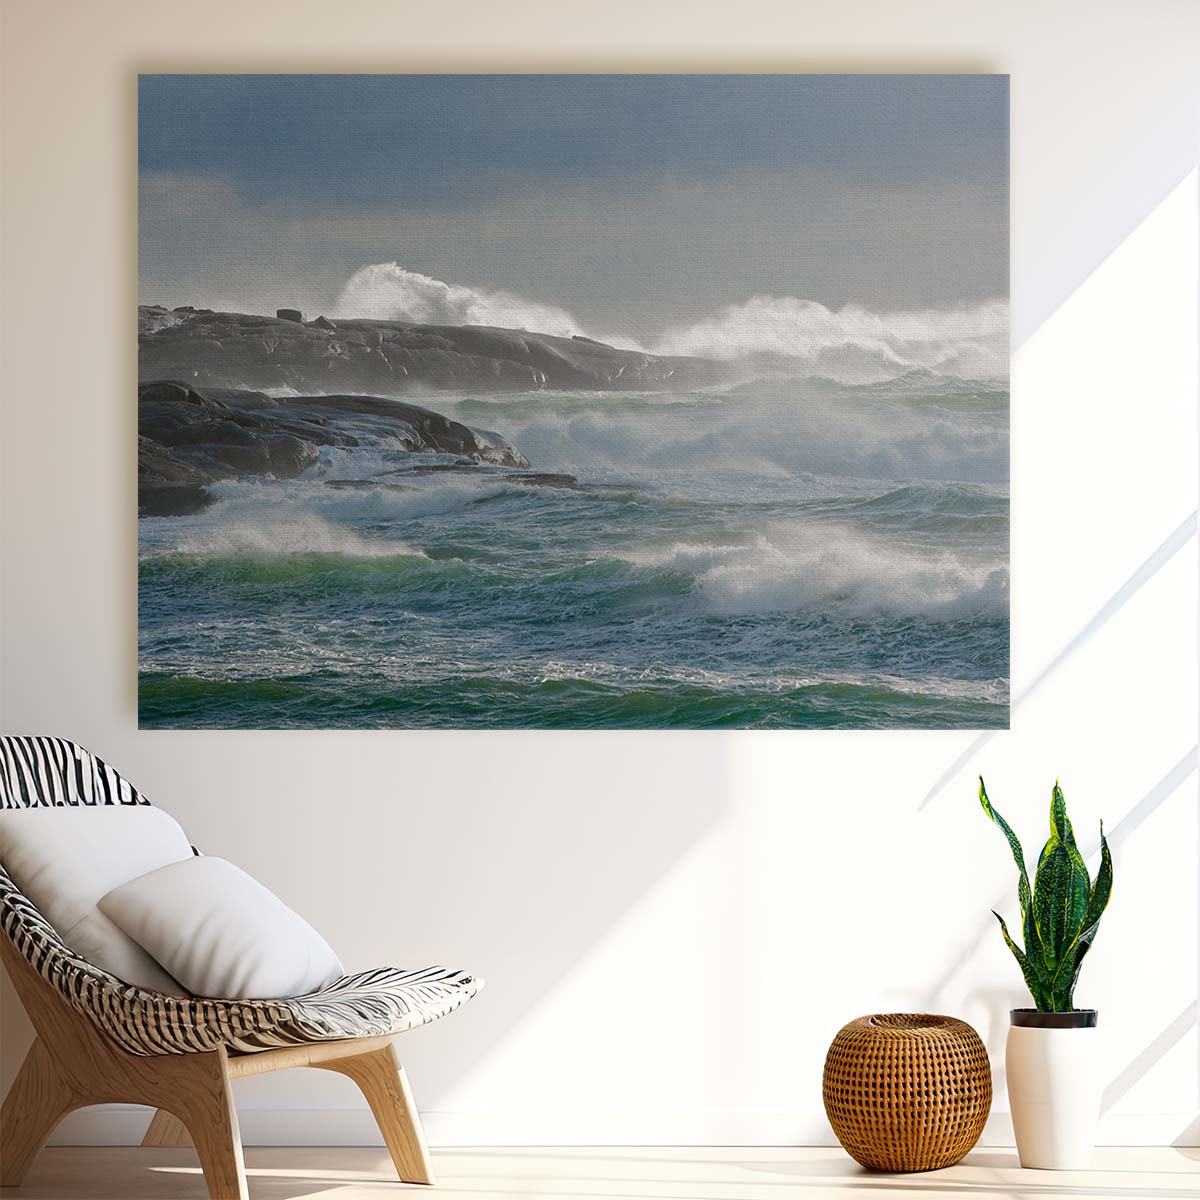 Nova Scotia Lighthouse Amidst Waves - Coastal Seascape Photography Wall Art